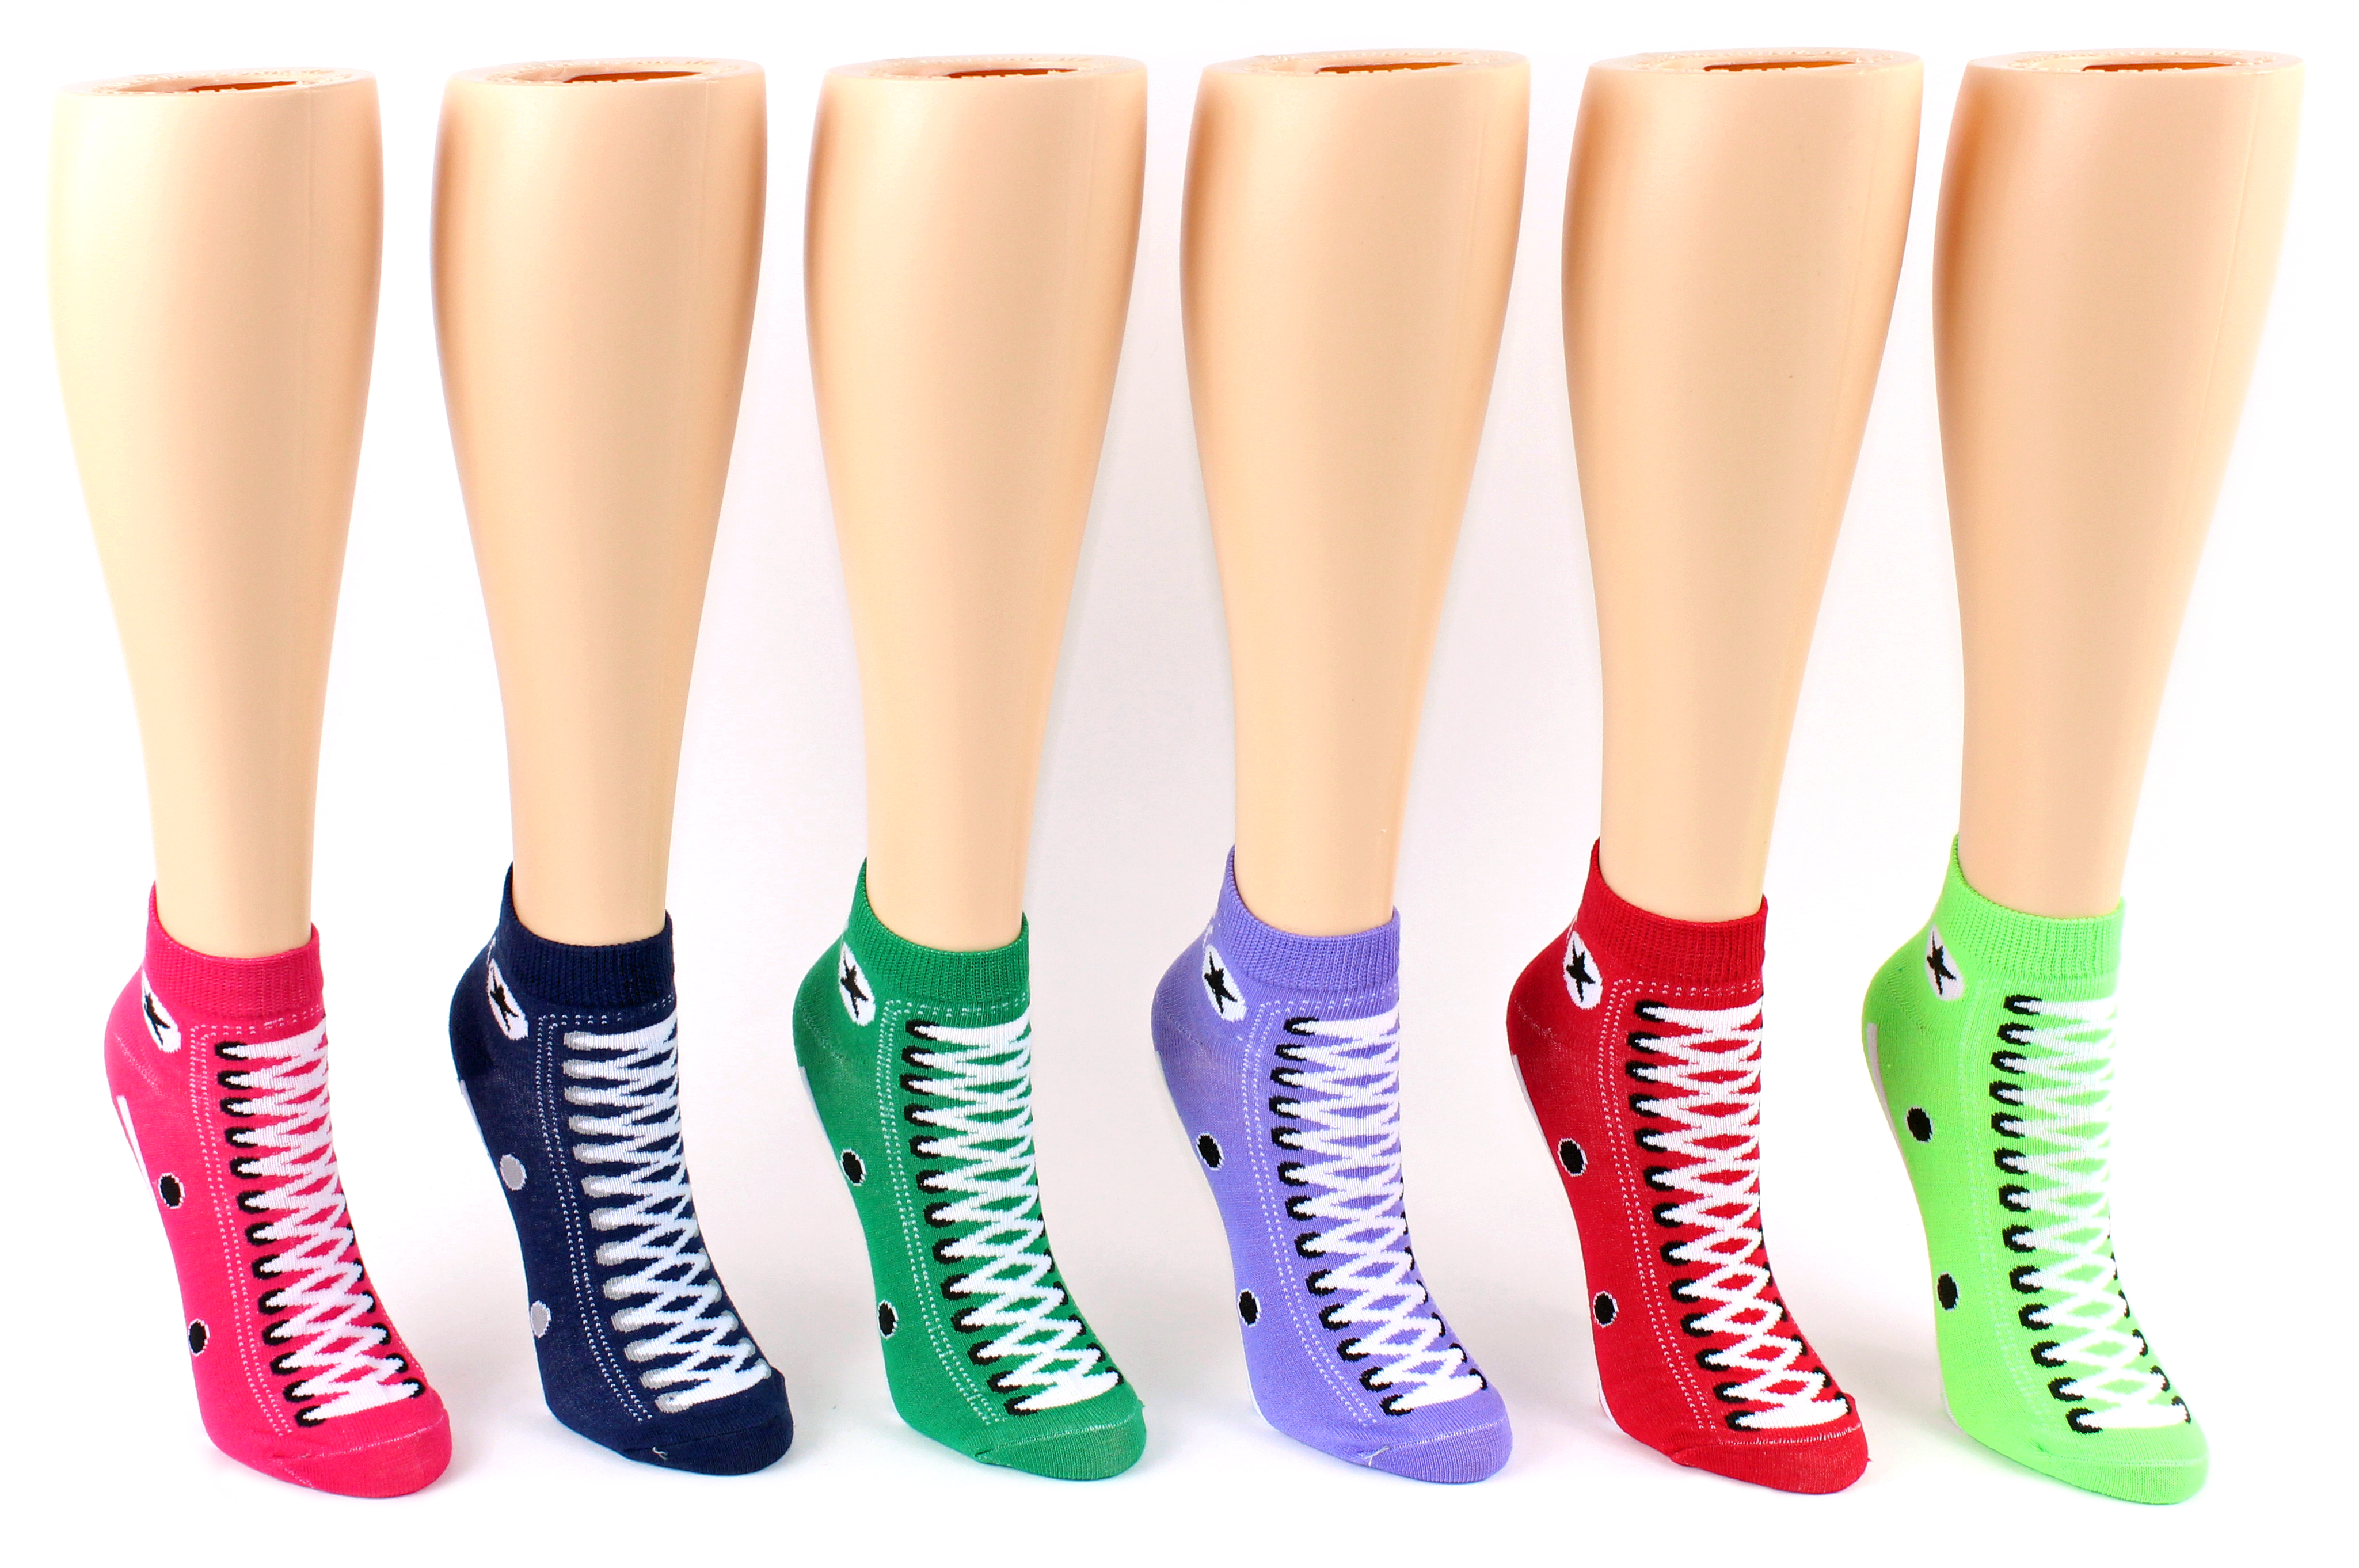 Women's Low Cut Novelty Socks - SNEAKER Print - Size 9-11